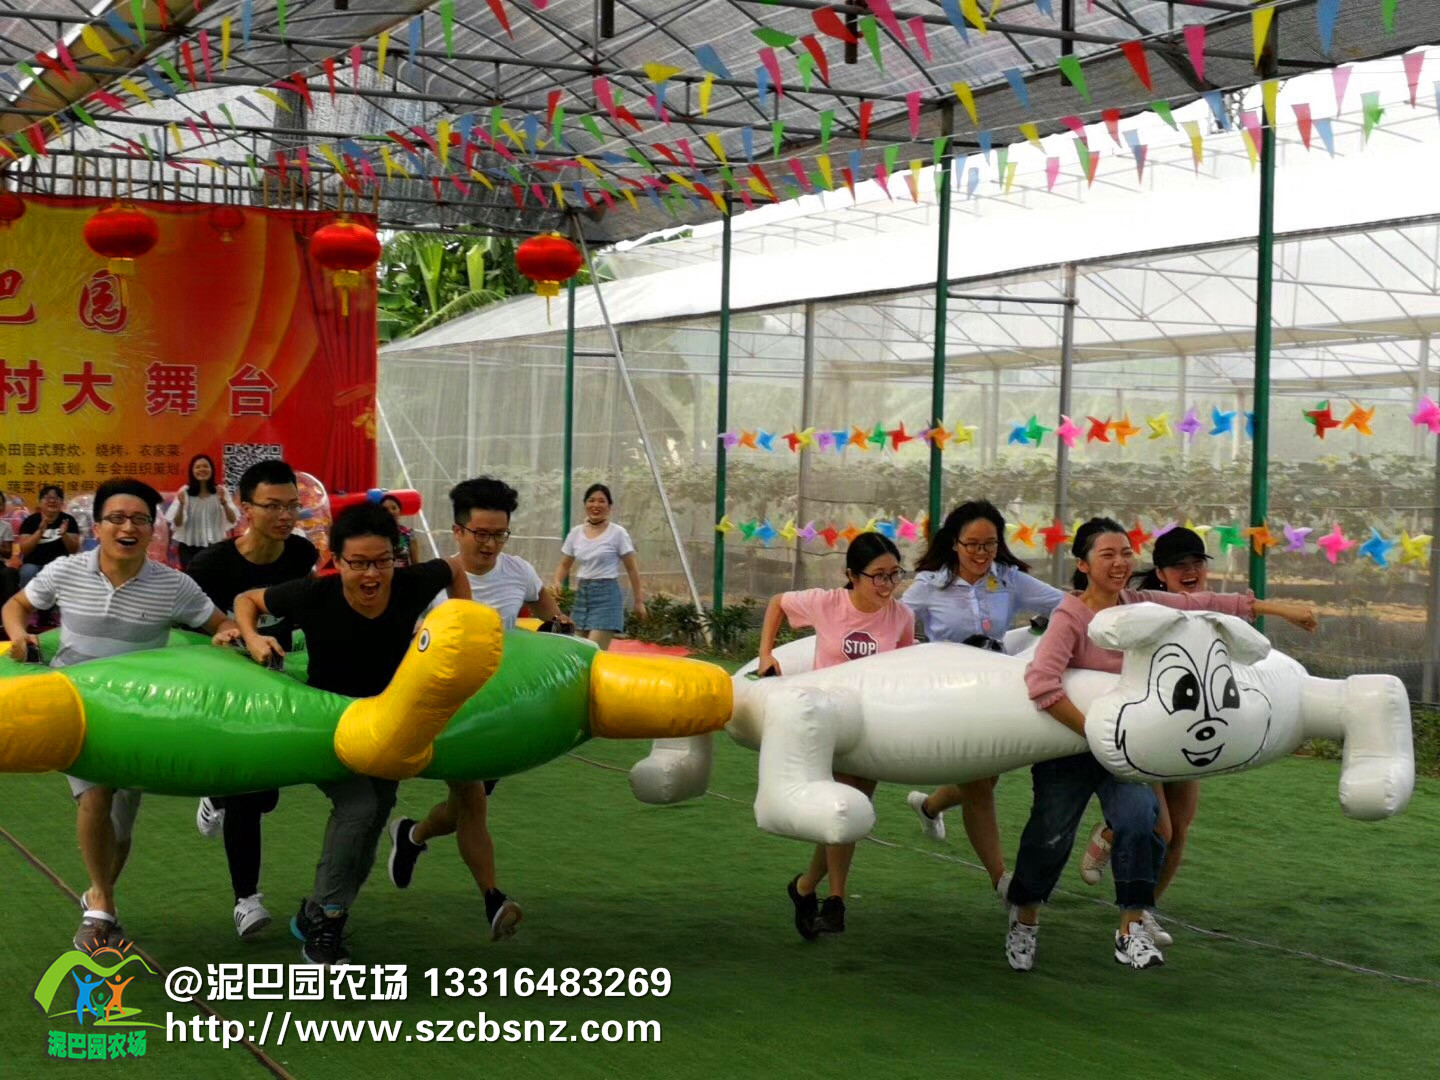 深圳泥巴园农场趣味运动龟兔赛跑